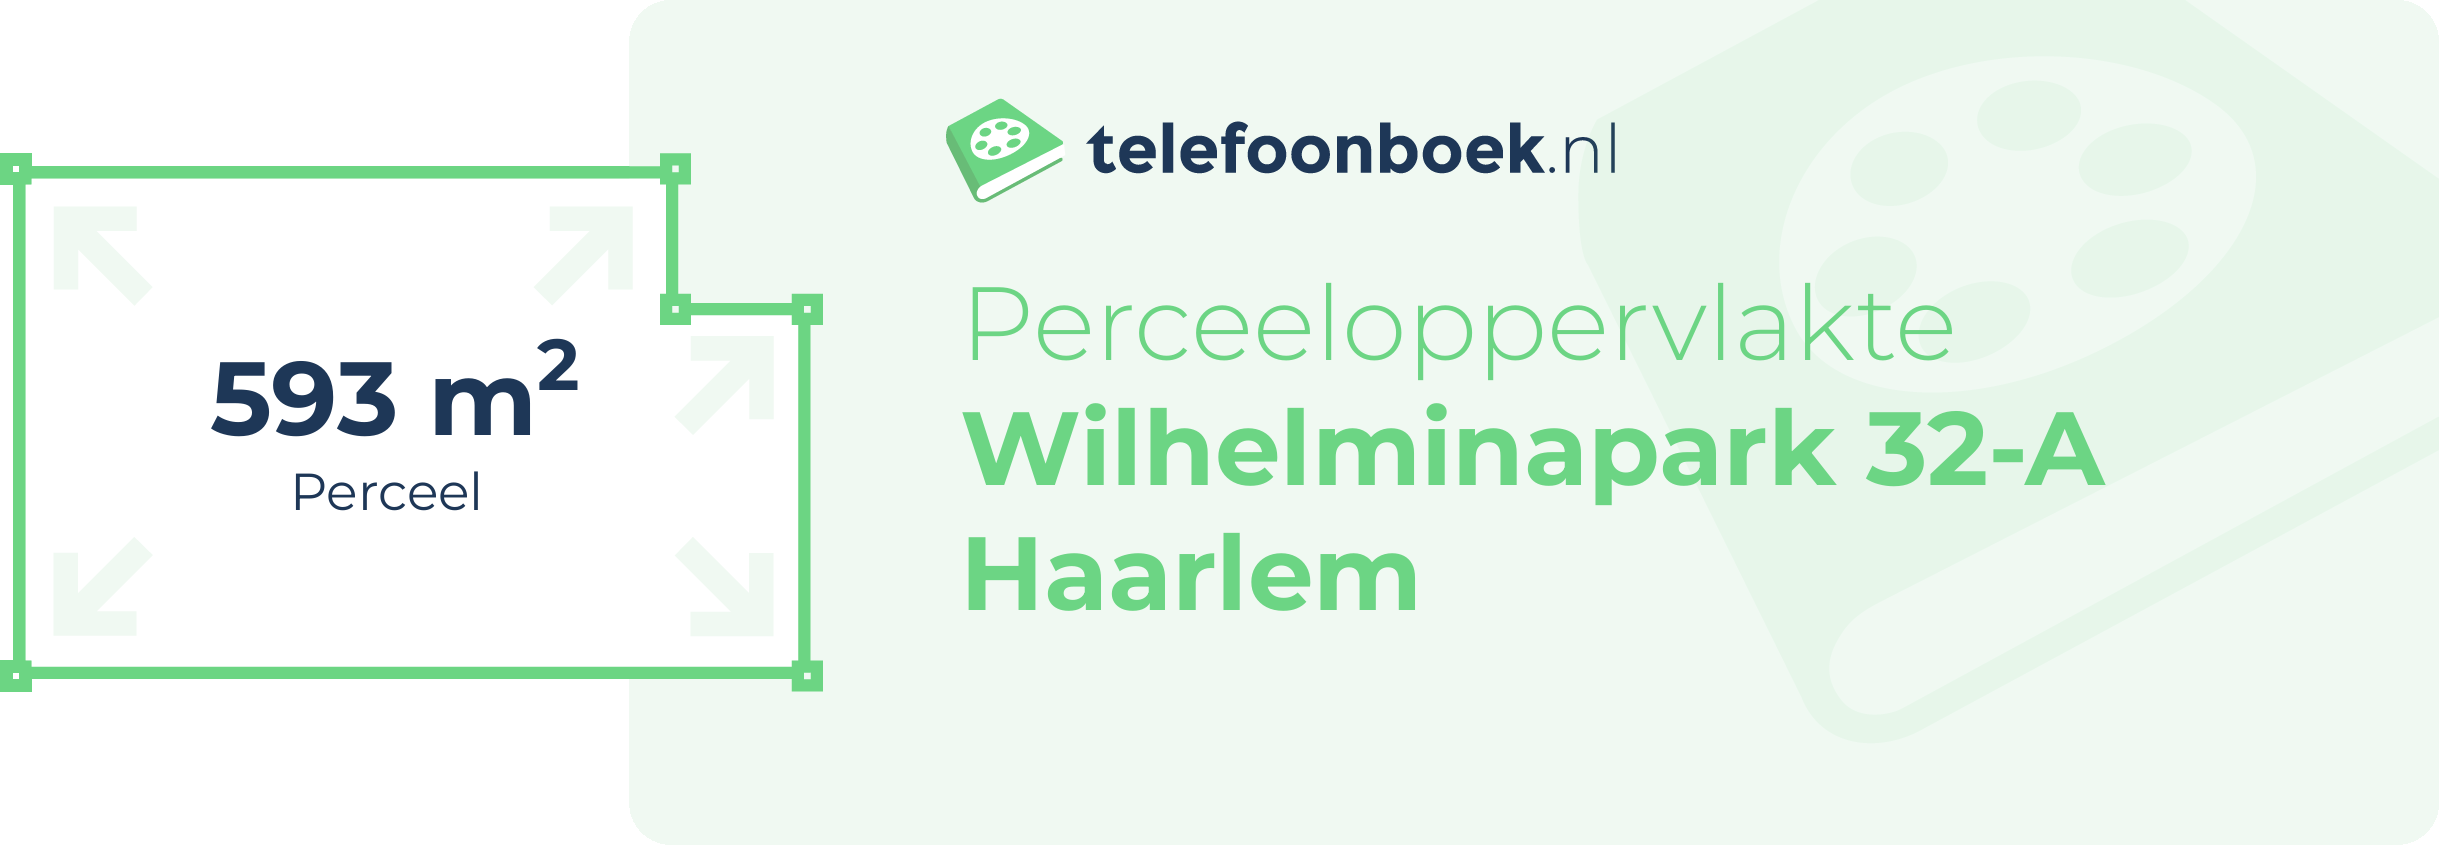 Perceeloppervlakte Wilhelminapark 32-A Haarlem